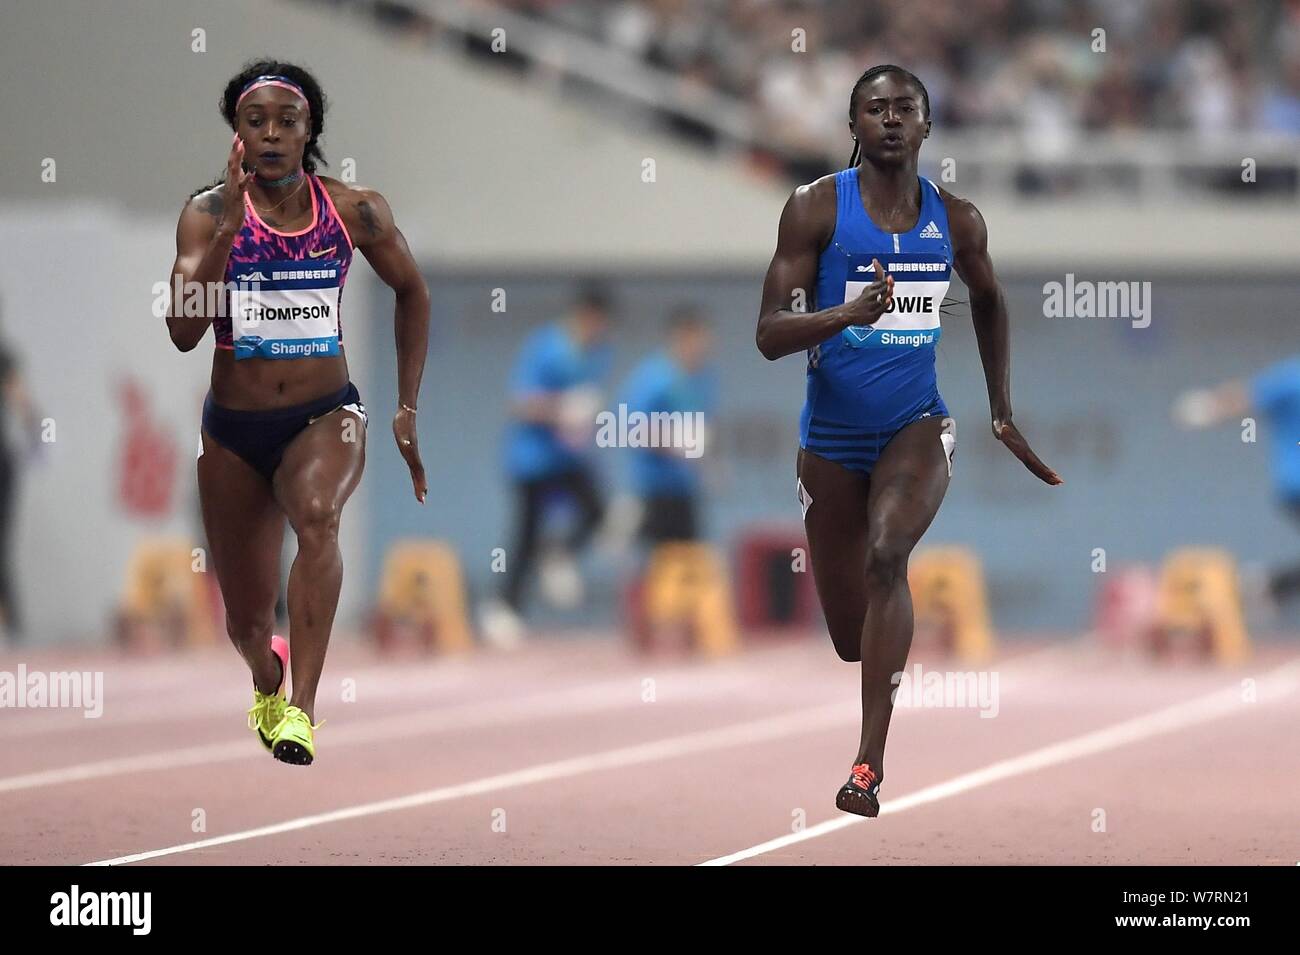 Elaine Thompson de la Jamaïque, à gauche, en concurrence dans la women's 100m au cours de l'IAAF Diamond League 2017 de Shanghai à Shanghai, Chine, 13 mai 2017. Elaine Banque D'Images